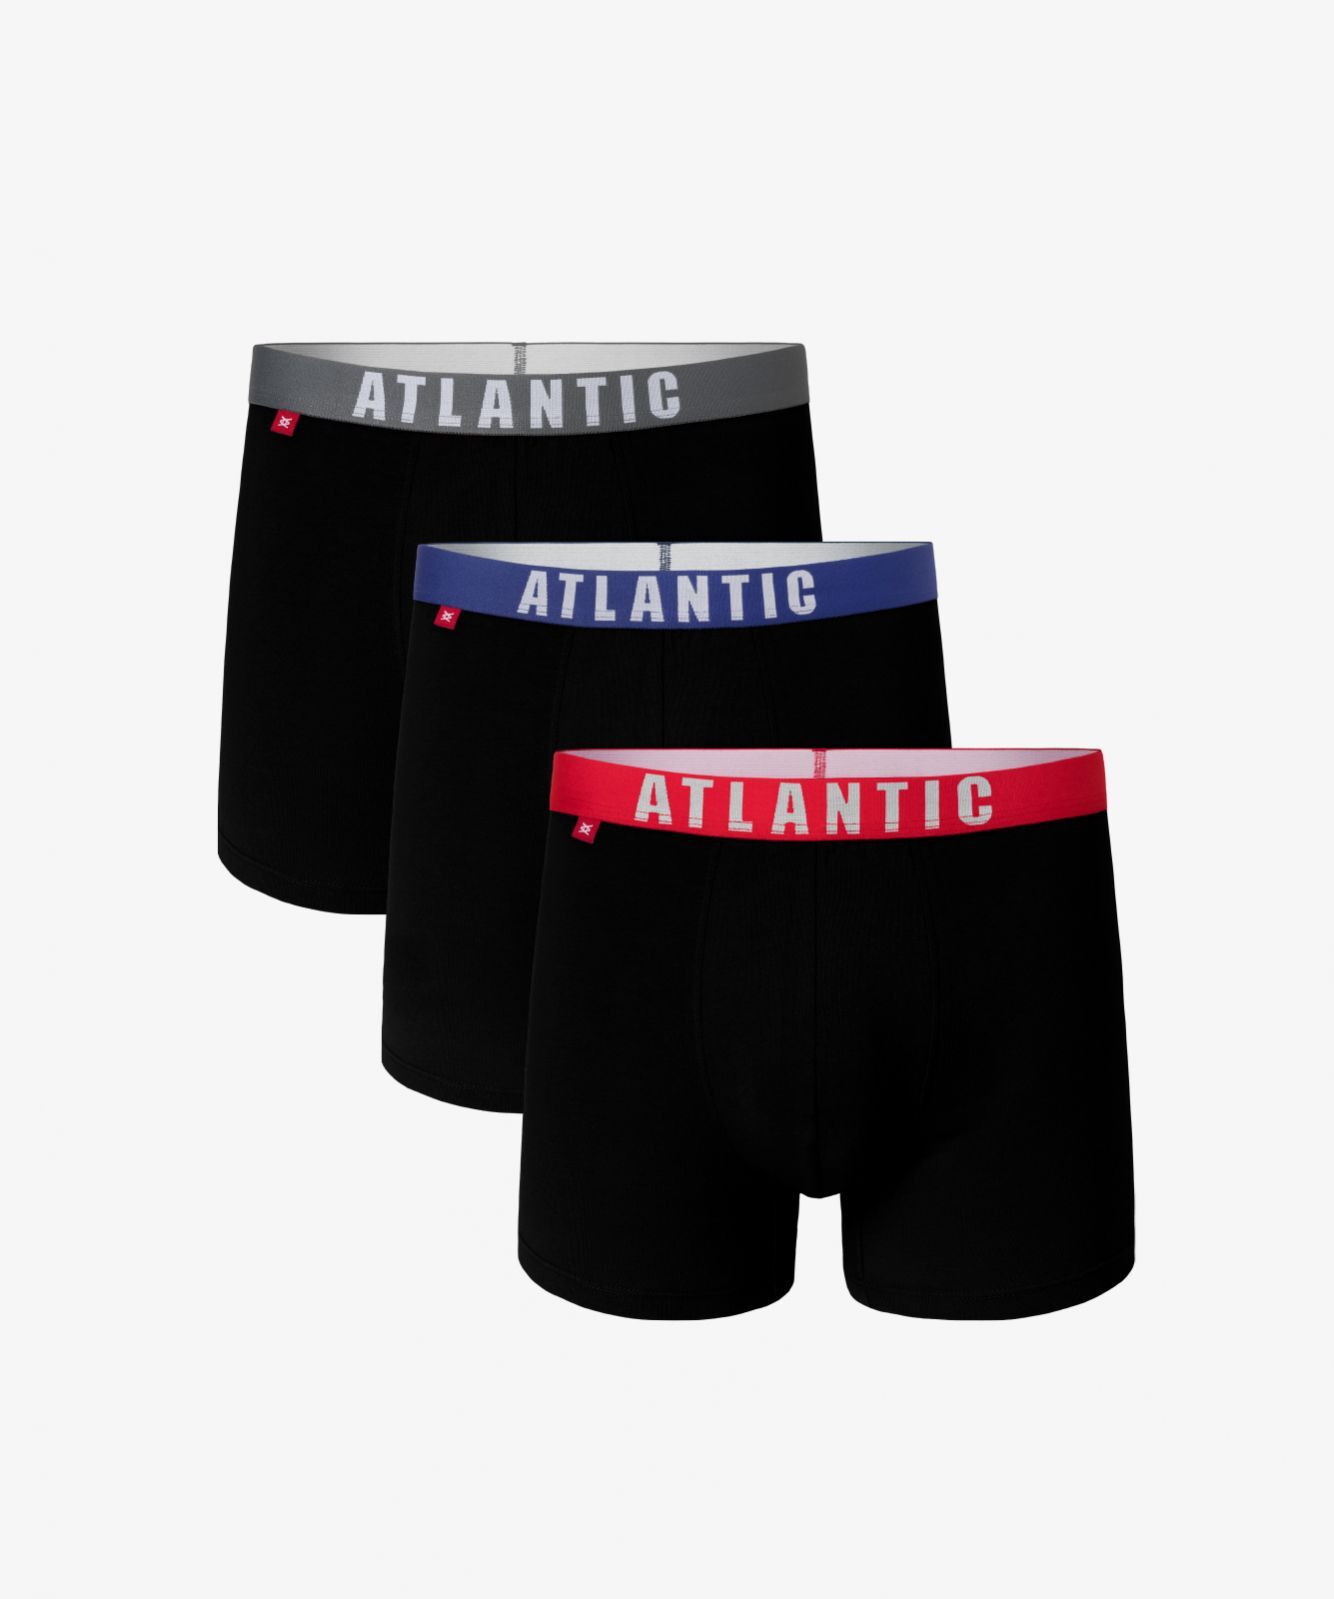 Мужские трусы шорты Atlantic, набор из 3 шт., хлопок, черный микс, 3MH-011